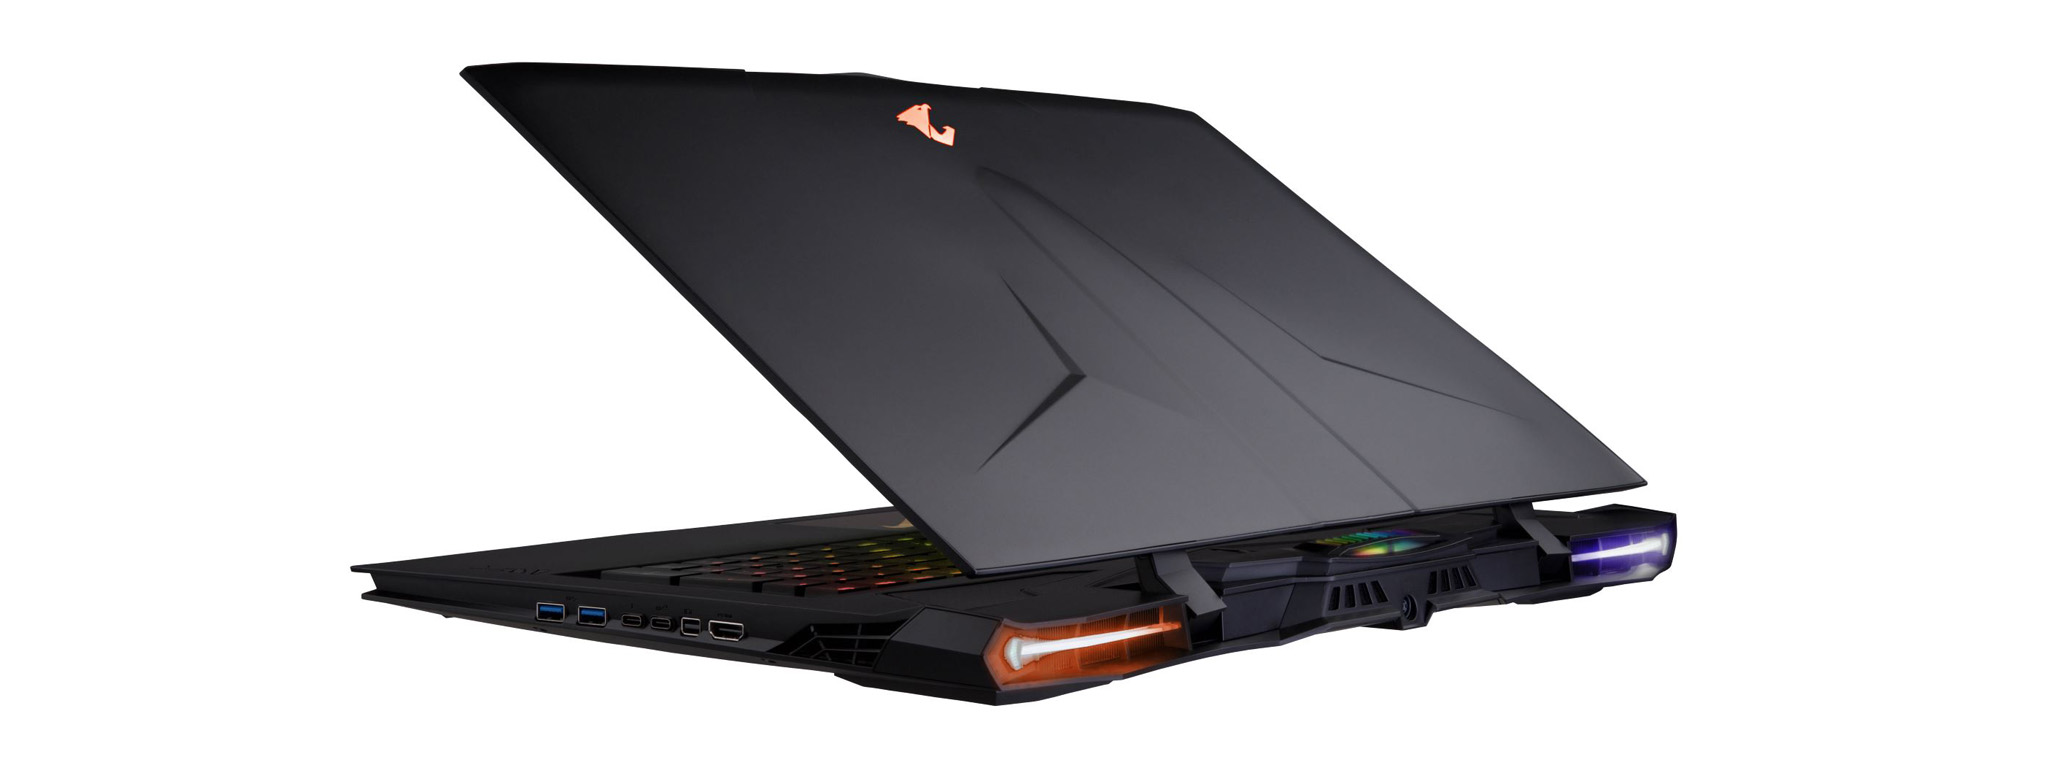 Gigabyte ra mắt AORUS X9: Laptop chơi game có 2 x GTX 1070, bàn phím cơ, có HUD, giá từ 1.749 USD